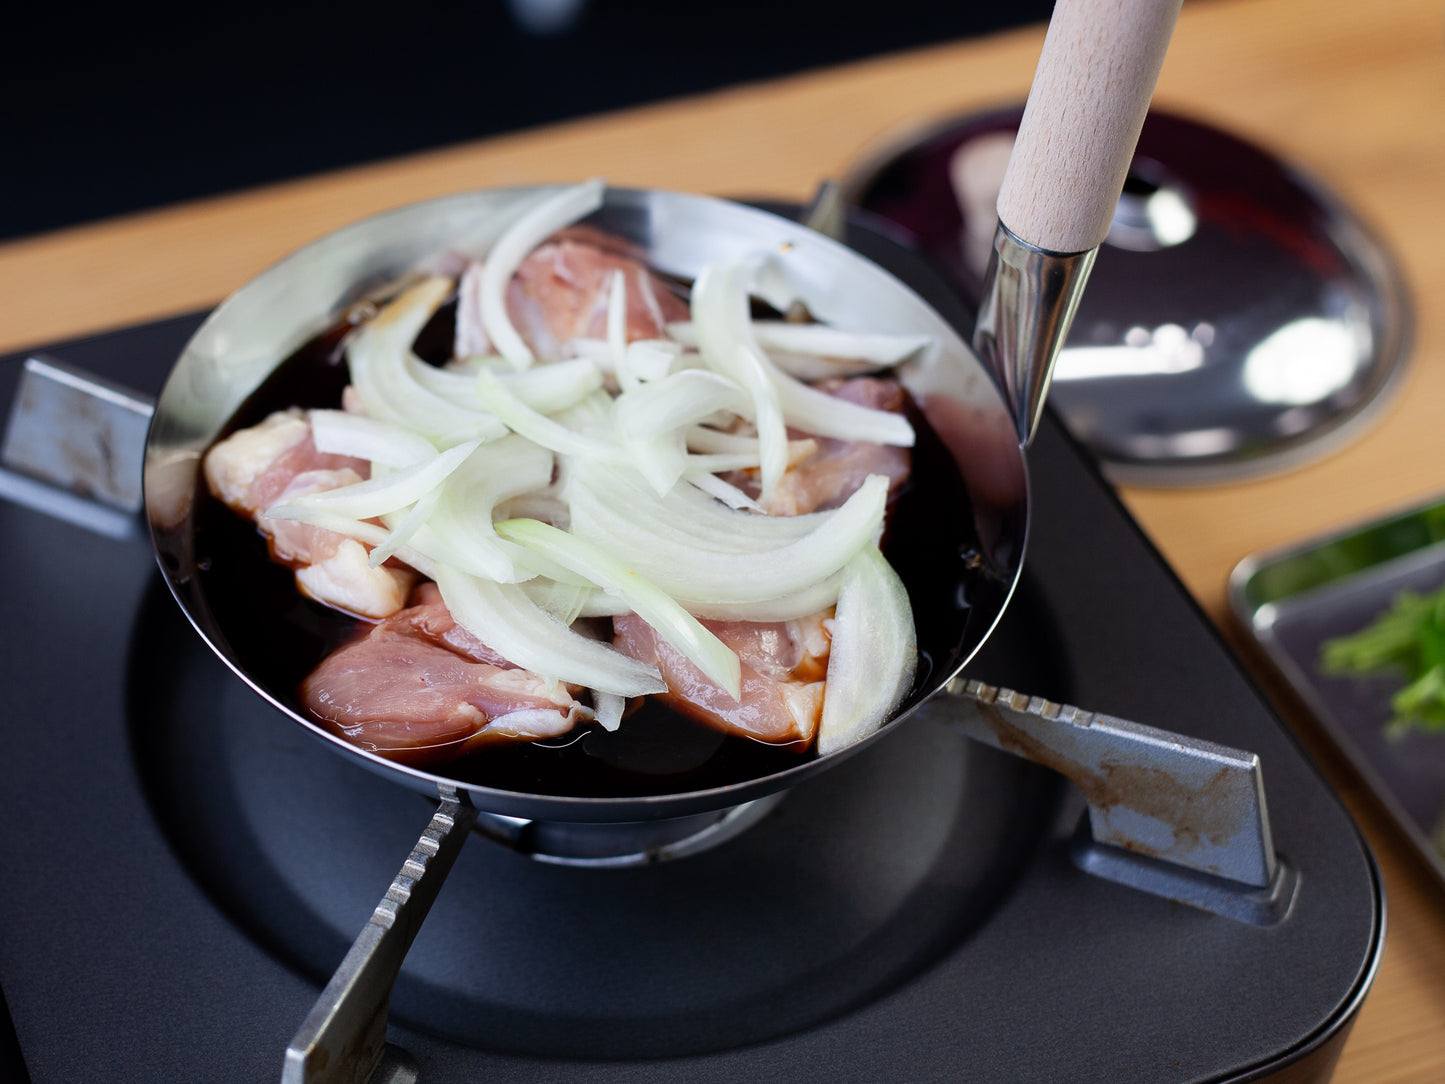 Frying Pan Ishikari - Japanese Cooking Pans - My Japanese Home